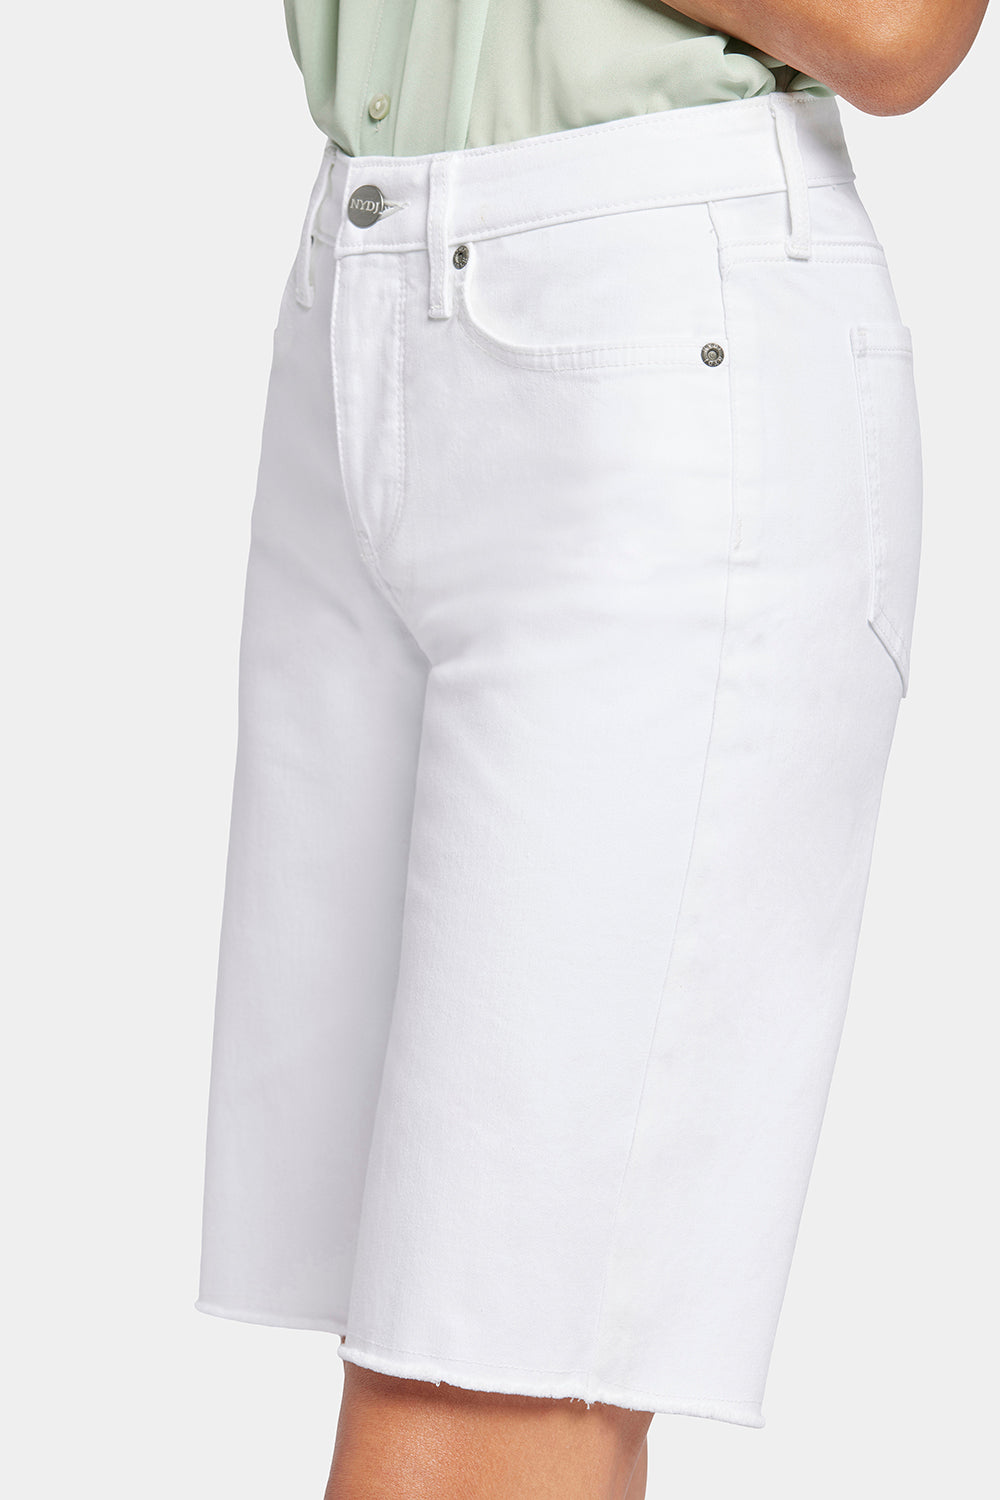 NYDJ Boyfriend Denim Shorts With Frayed Hems - Optic White